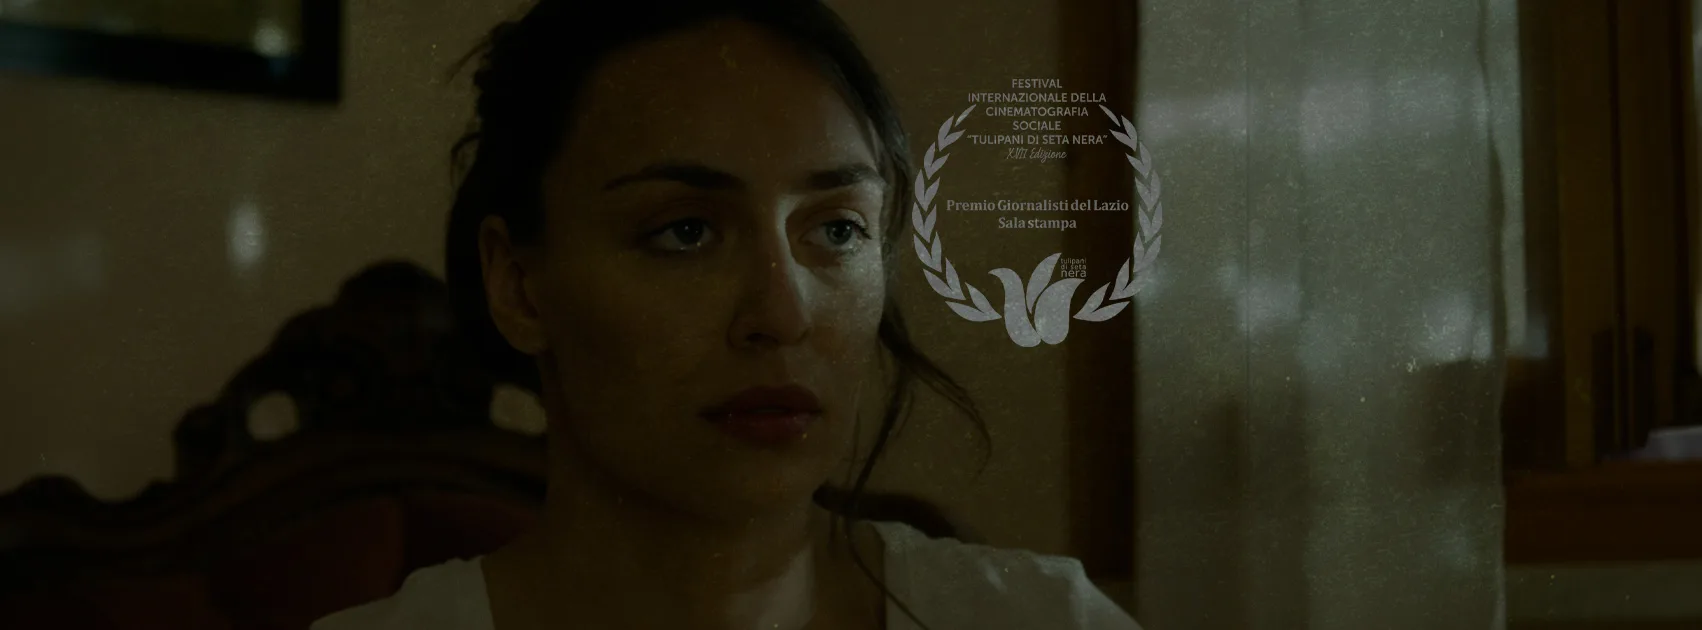 Il cortometraggio "L'abbraccio rubato" di Simone Gazzola vince il premio "Ordine Giornalisti del Lazio" al TSN.